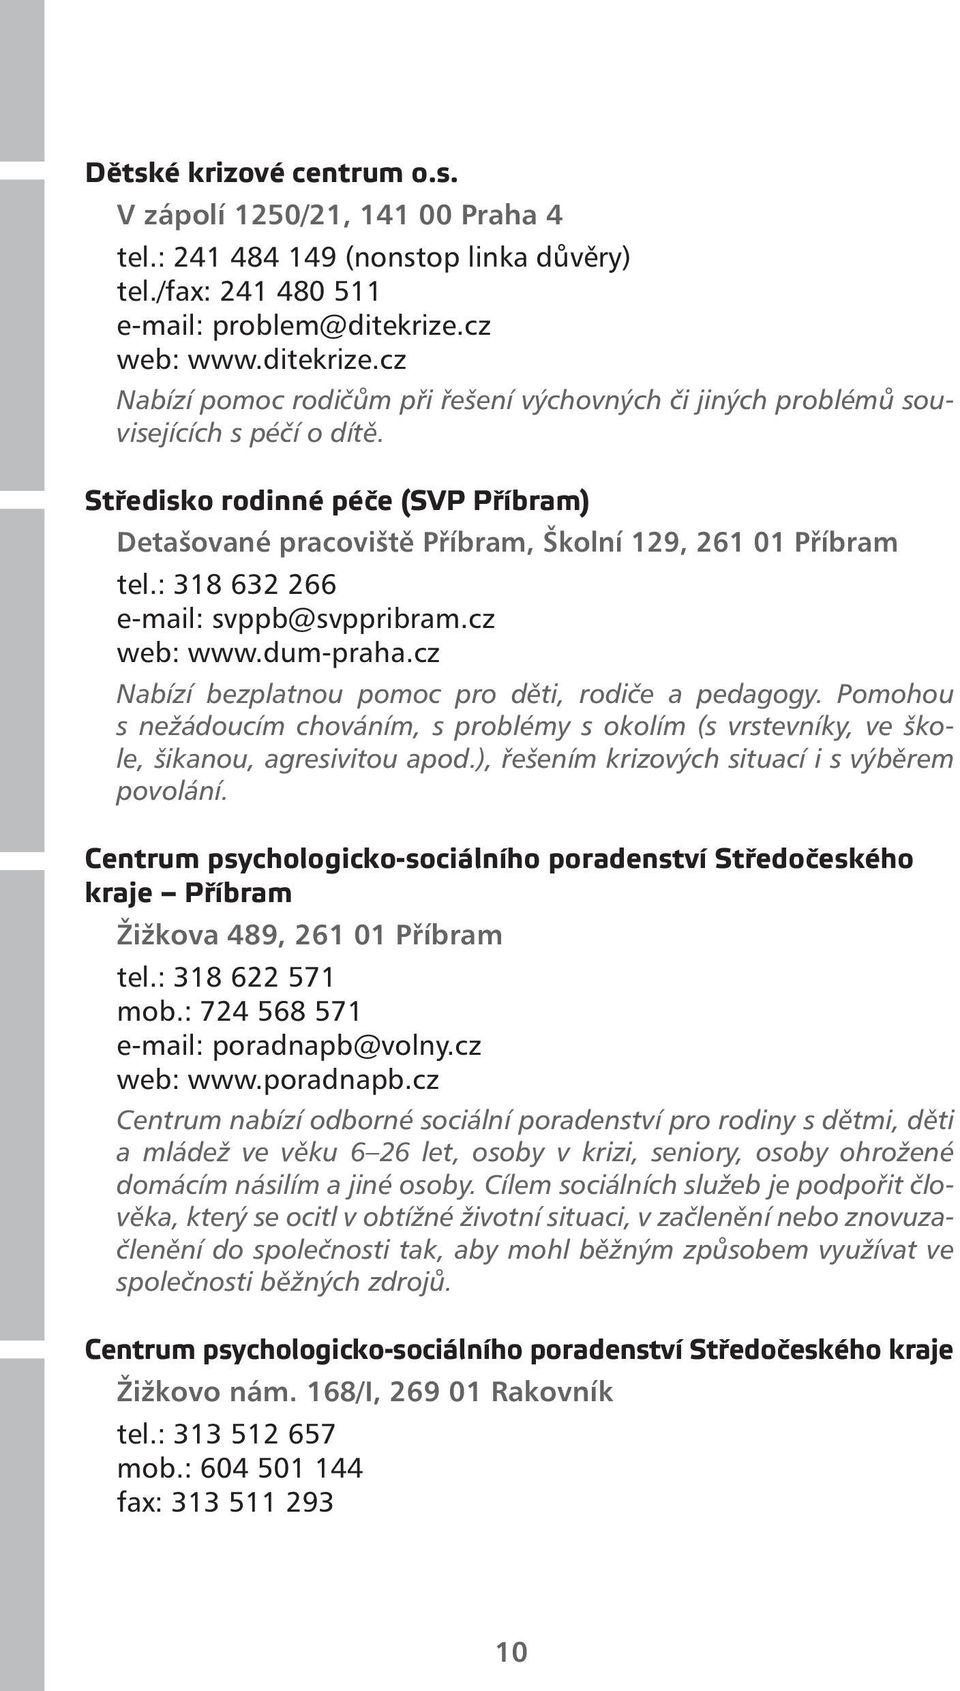 Středisko rodinné péče (SVP Příbram) Detašované pracoviště Příbram, Školní 129, 261 01 Příbram tel.: 318 632 266 e-mail: svppb@svppribram.cz web: www.dum-praha.